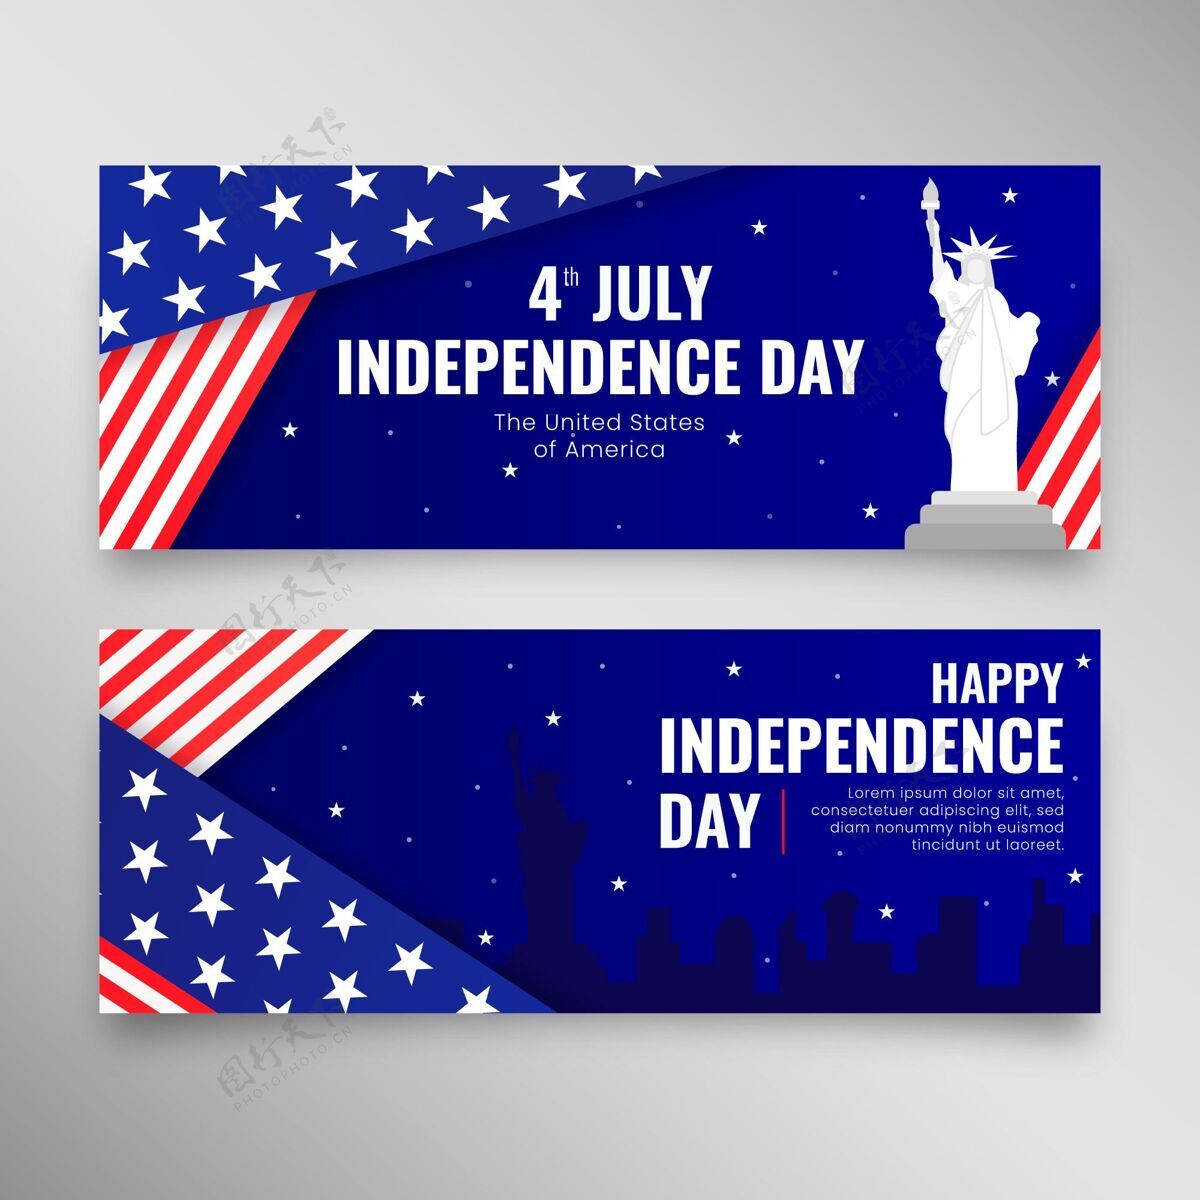 美国七月四日-独立日横幅布景节日纪念横幅